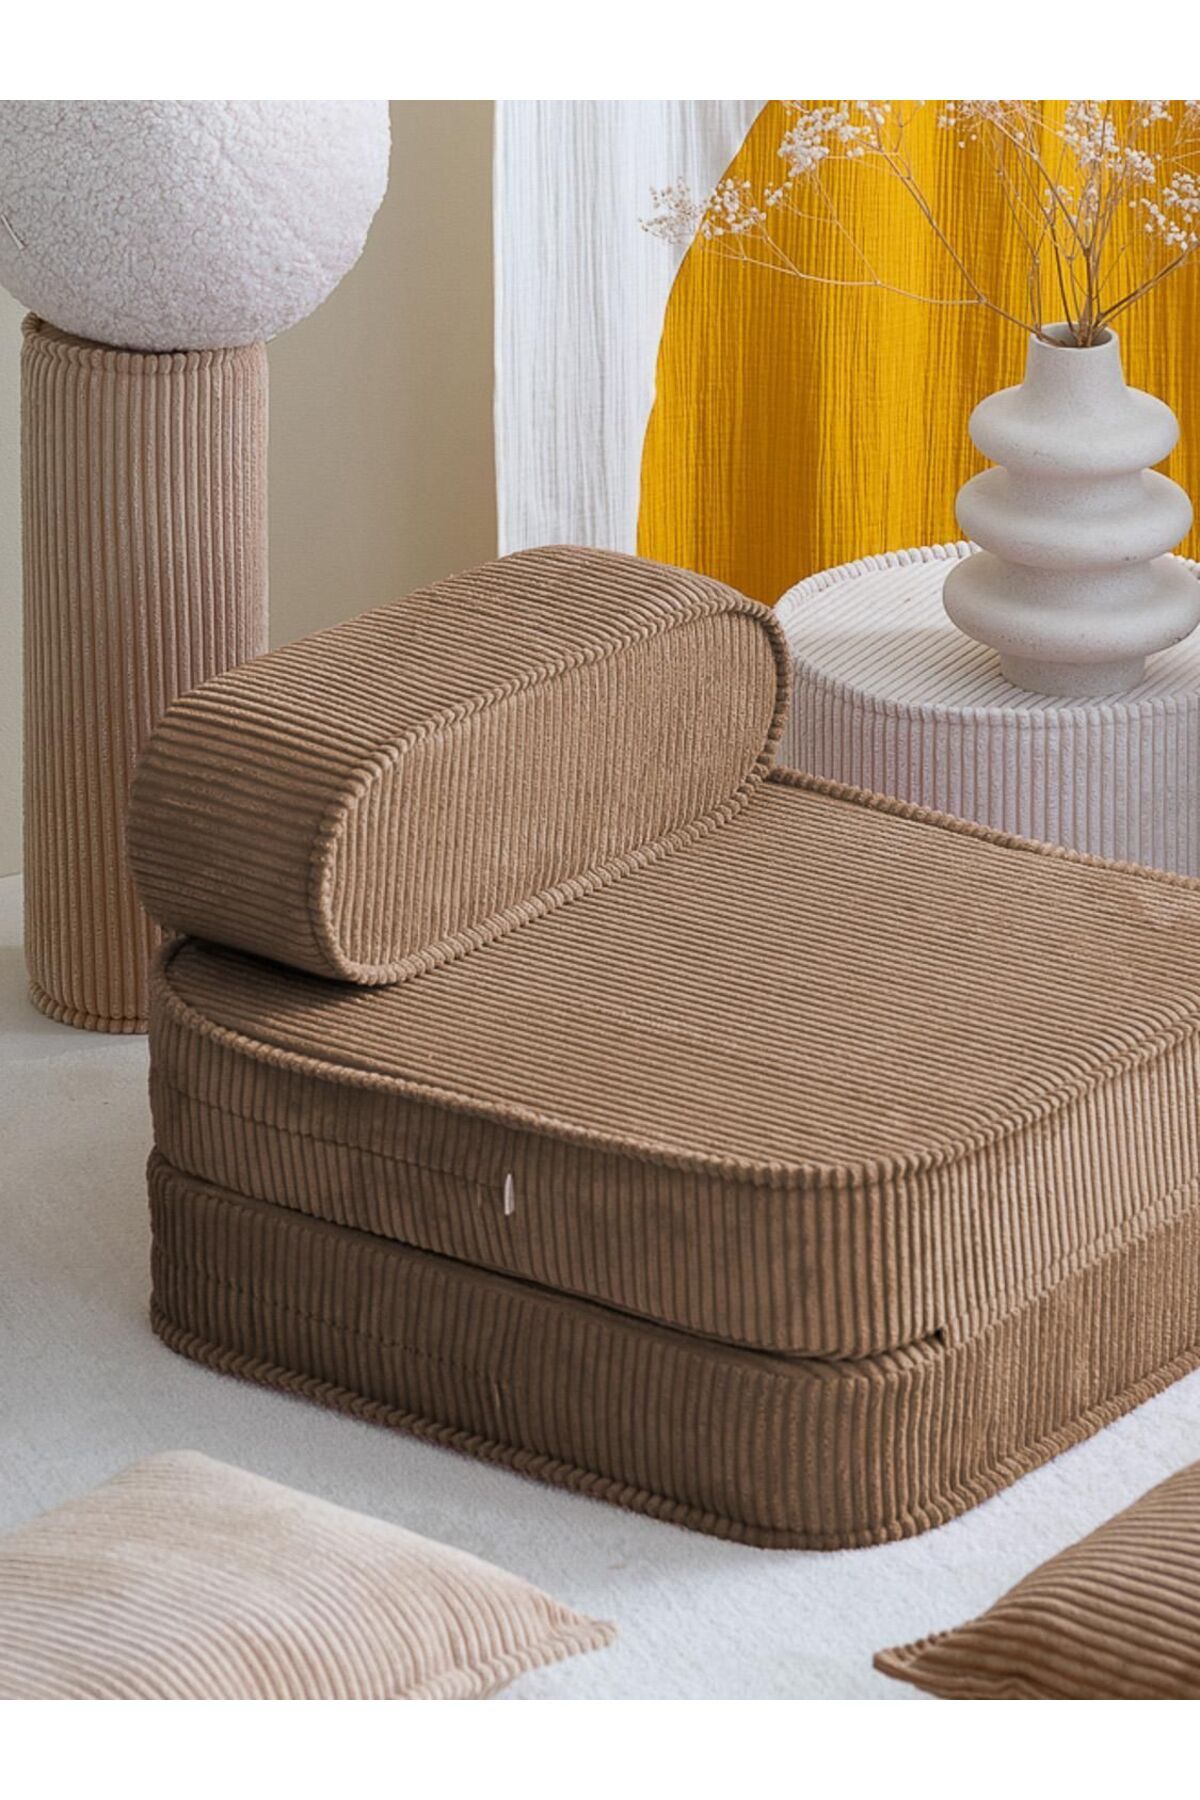 S Home Design Concept Lotus Fitilli Berjer Katlanan Açılan Yataklı Yer Minderi